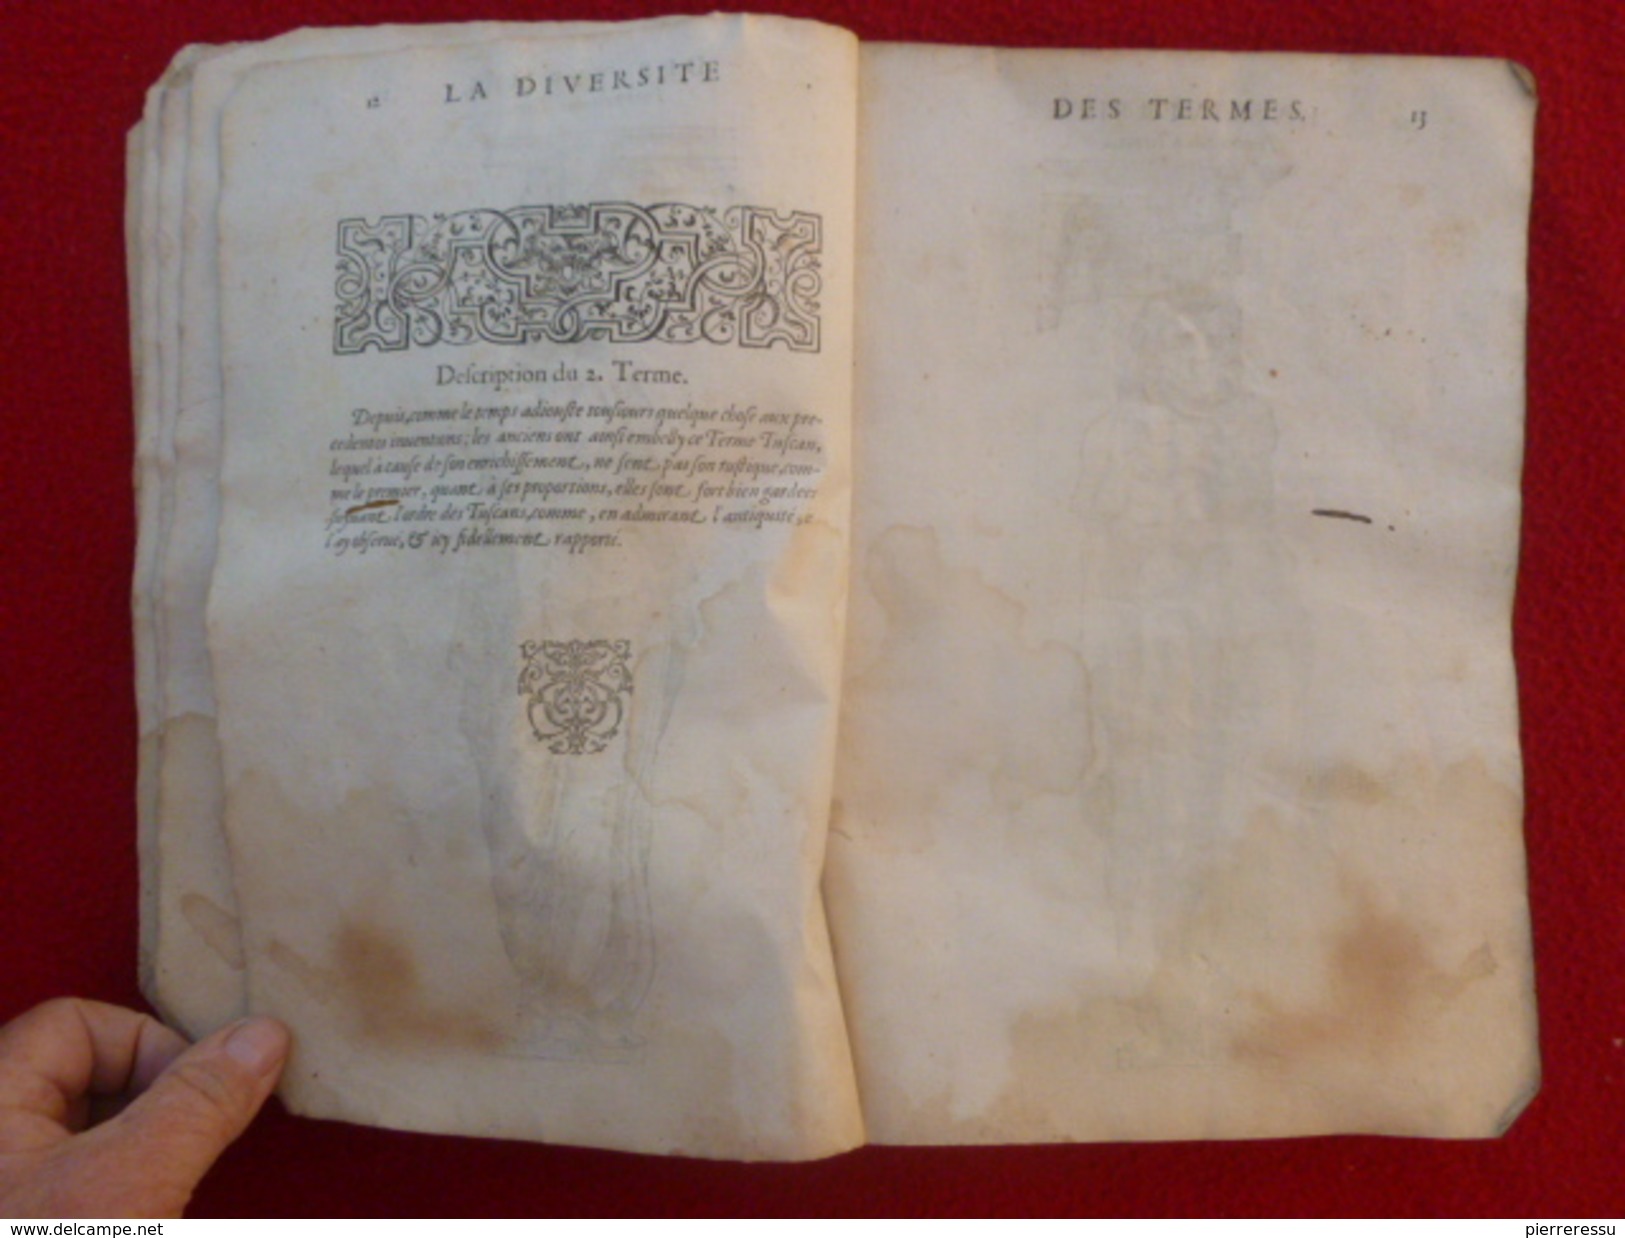 LIVRE JEAN MARCORELLE 1572 HUGUES SAMBIN ARCHITECTE LA DIVERSITE DES TERMES AU SEIGNEUR ELEONOR CHABOT